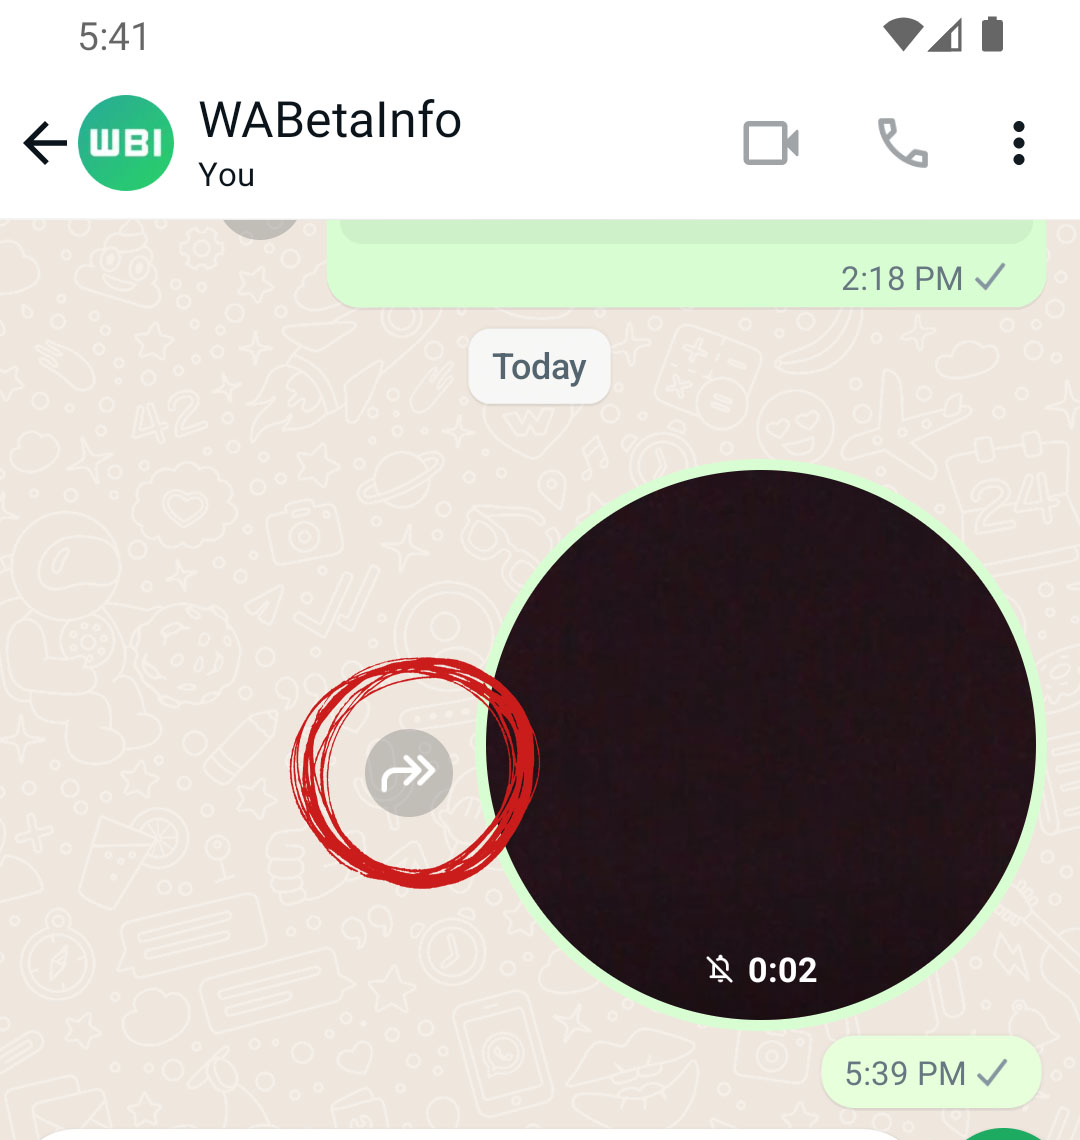 WhatsApp, Güvenlik Amacıyla Kullanıma Sunduğu 